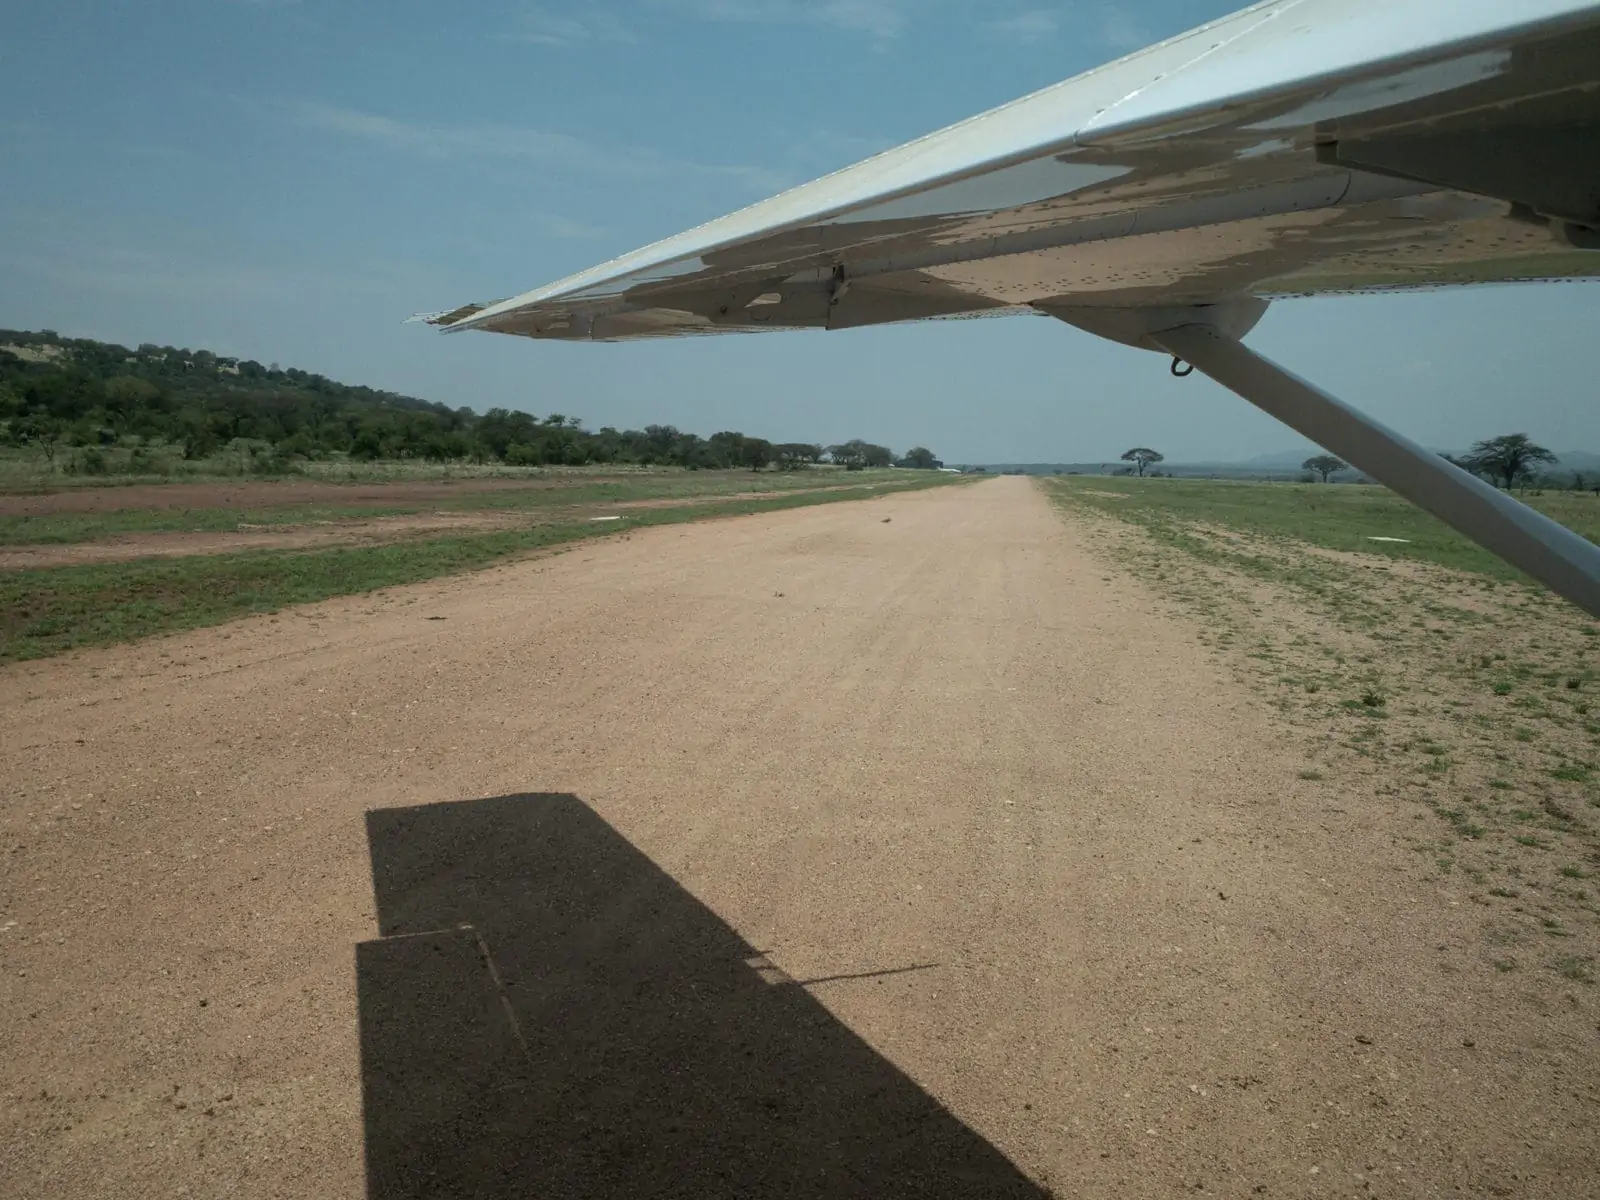 Landing as Sasakwa Airstrip